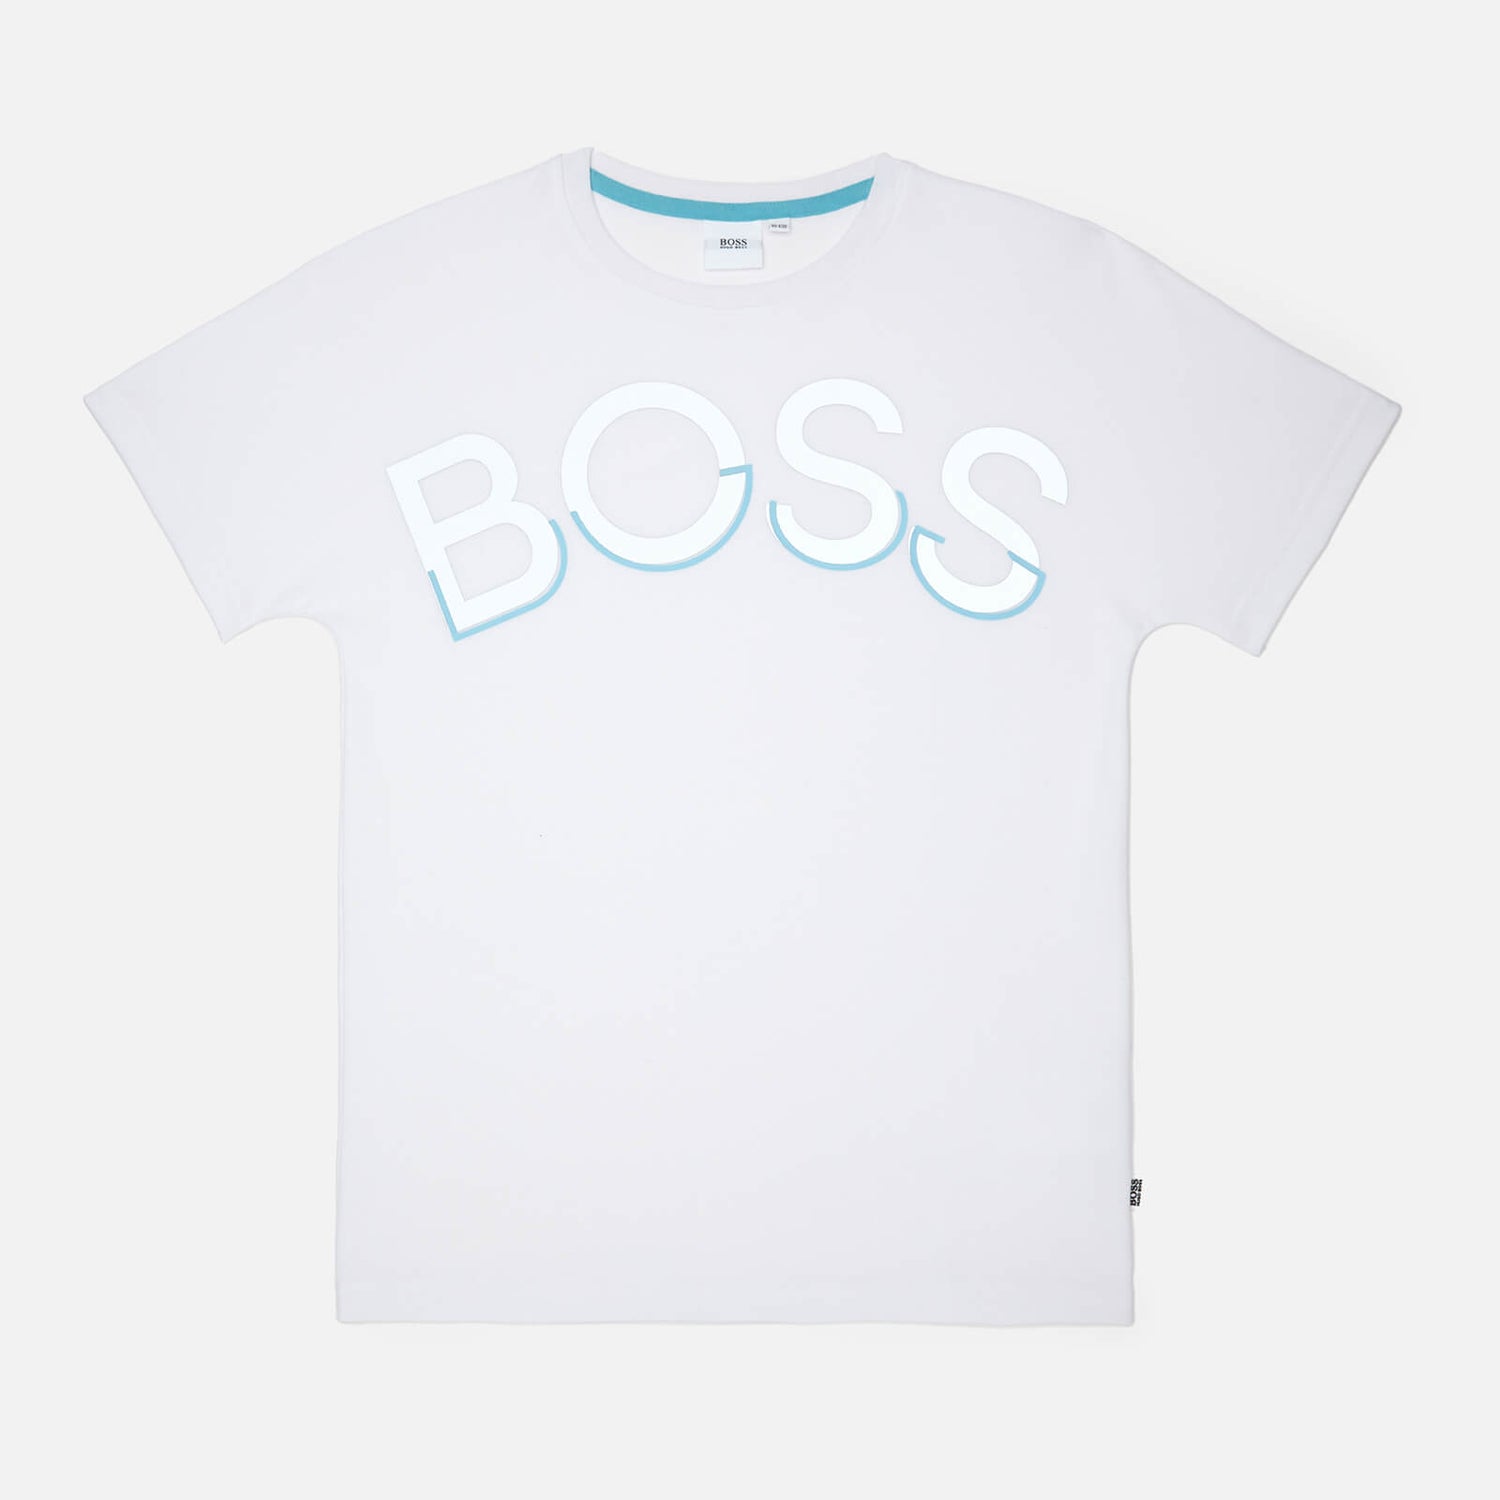 Hugo Boss Boys' BOSS Short Sleeve T-Shirt - White